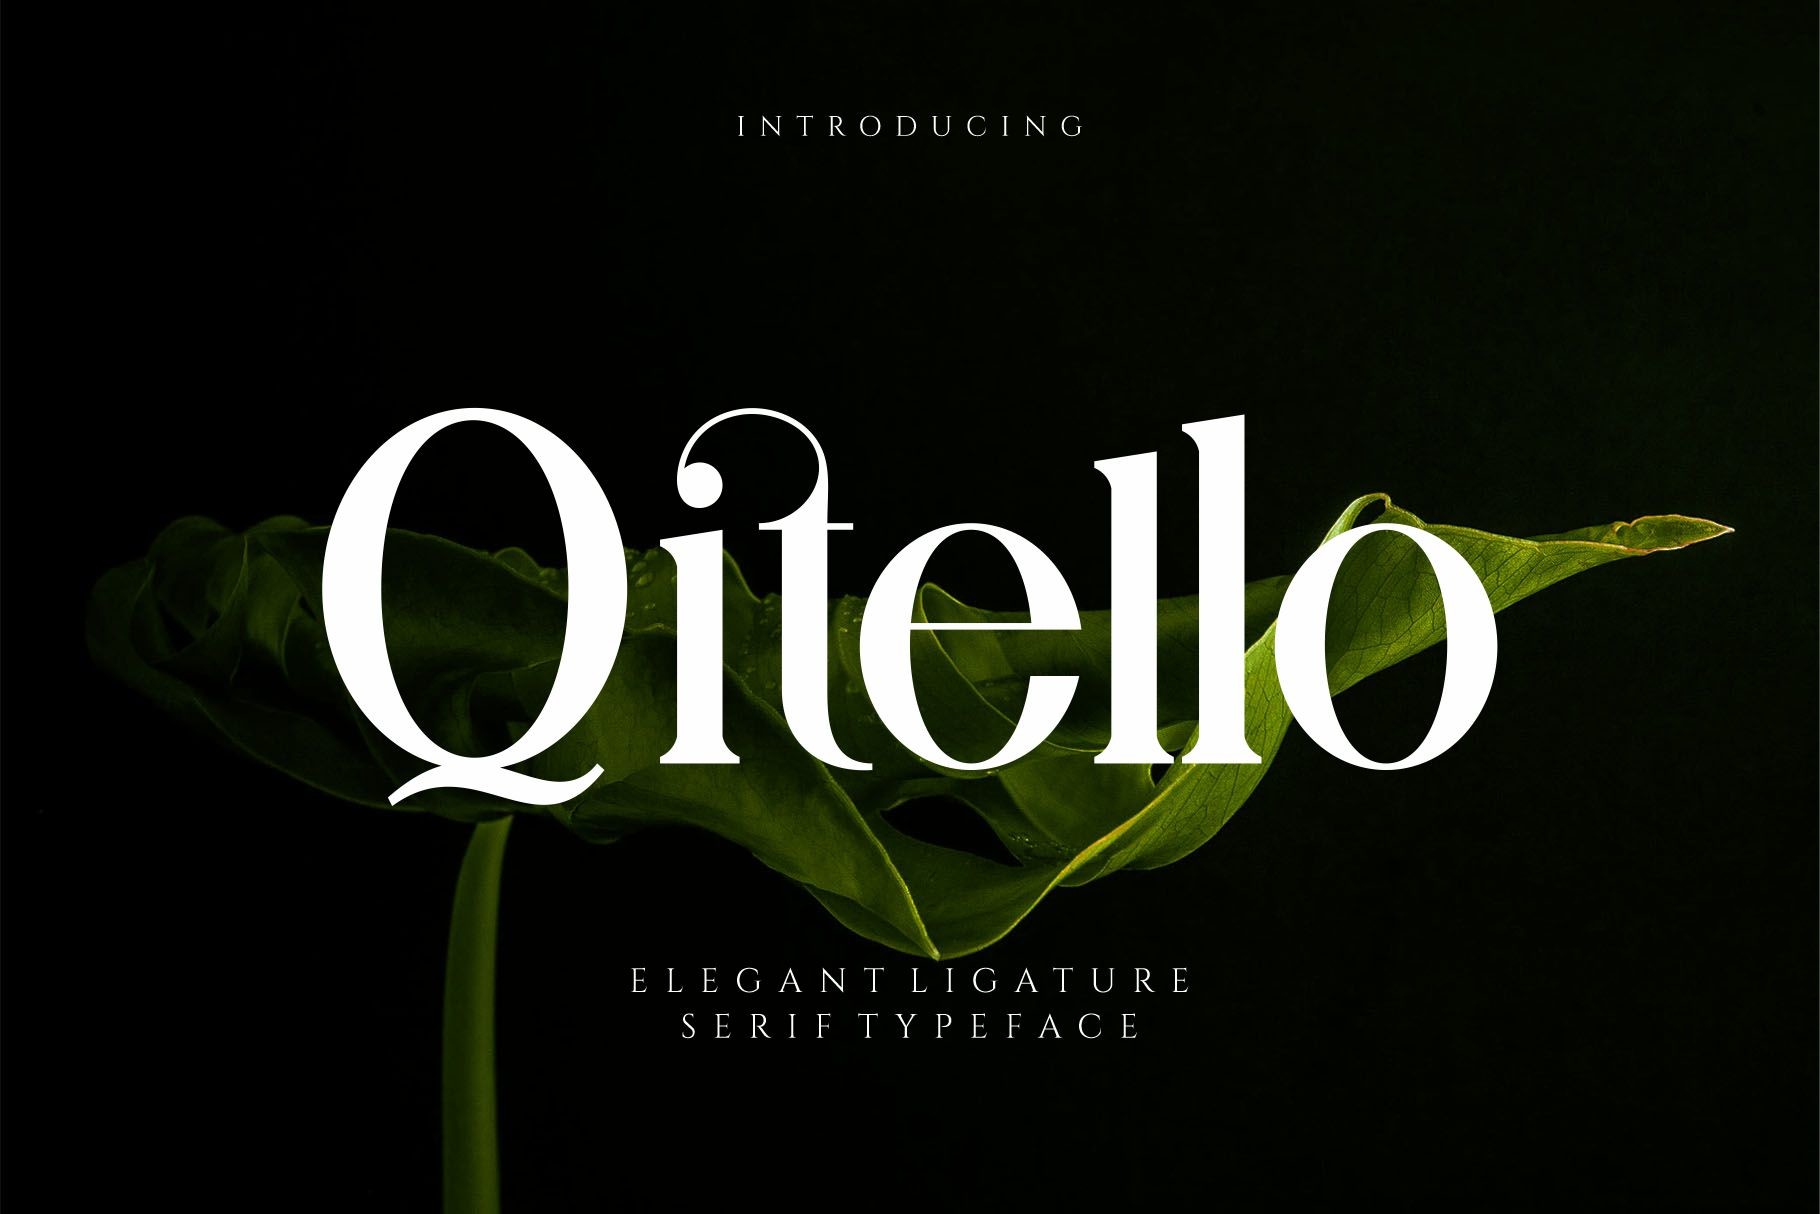 Qitello Font